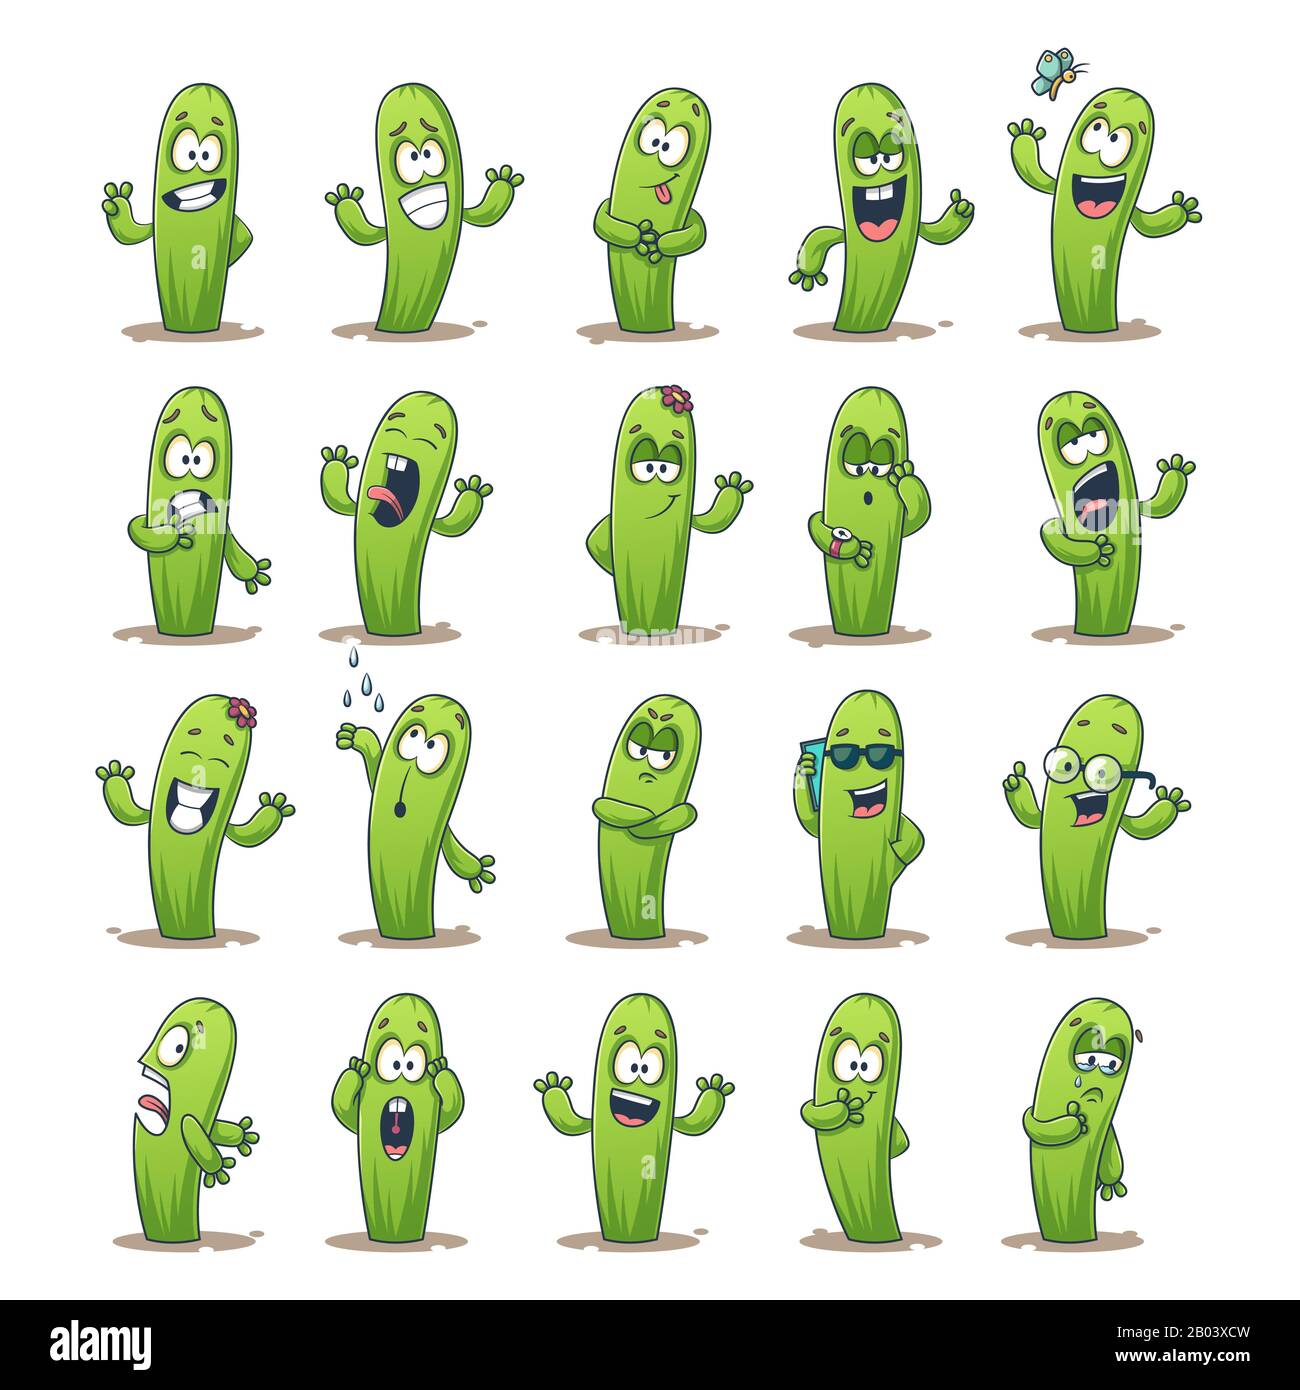 Kaktusaufkleber Set. Satz süßer Cartoon-Charaktere. Vektorsammlung für Aufkleber, Flecken, Abzeichen, Stifte. Stock Vektor